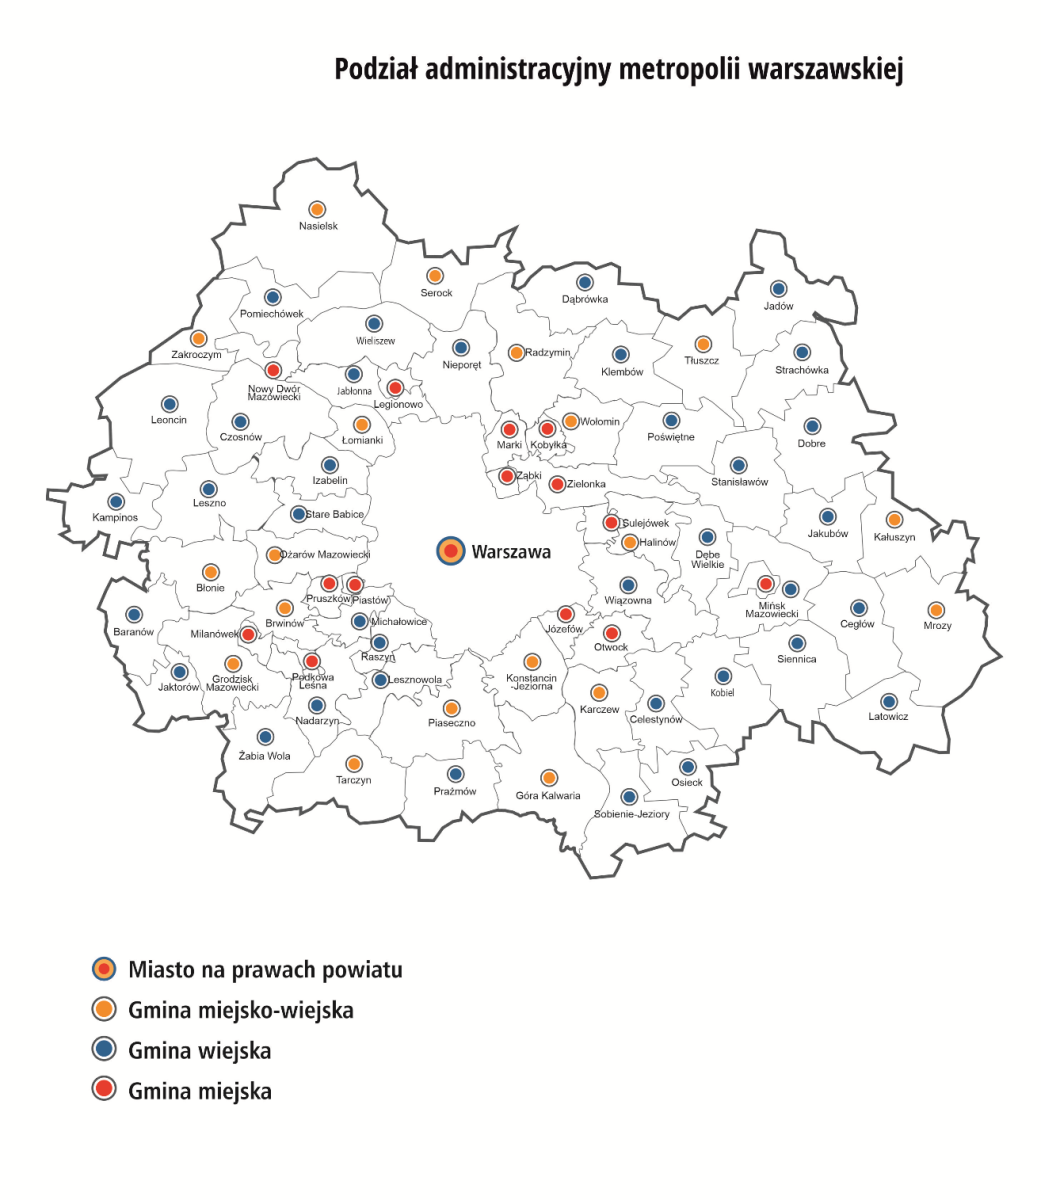 Mapa podziału administracyjnego metropolii warszawskiej